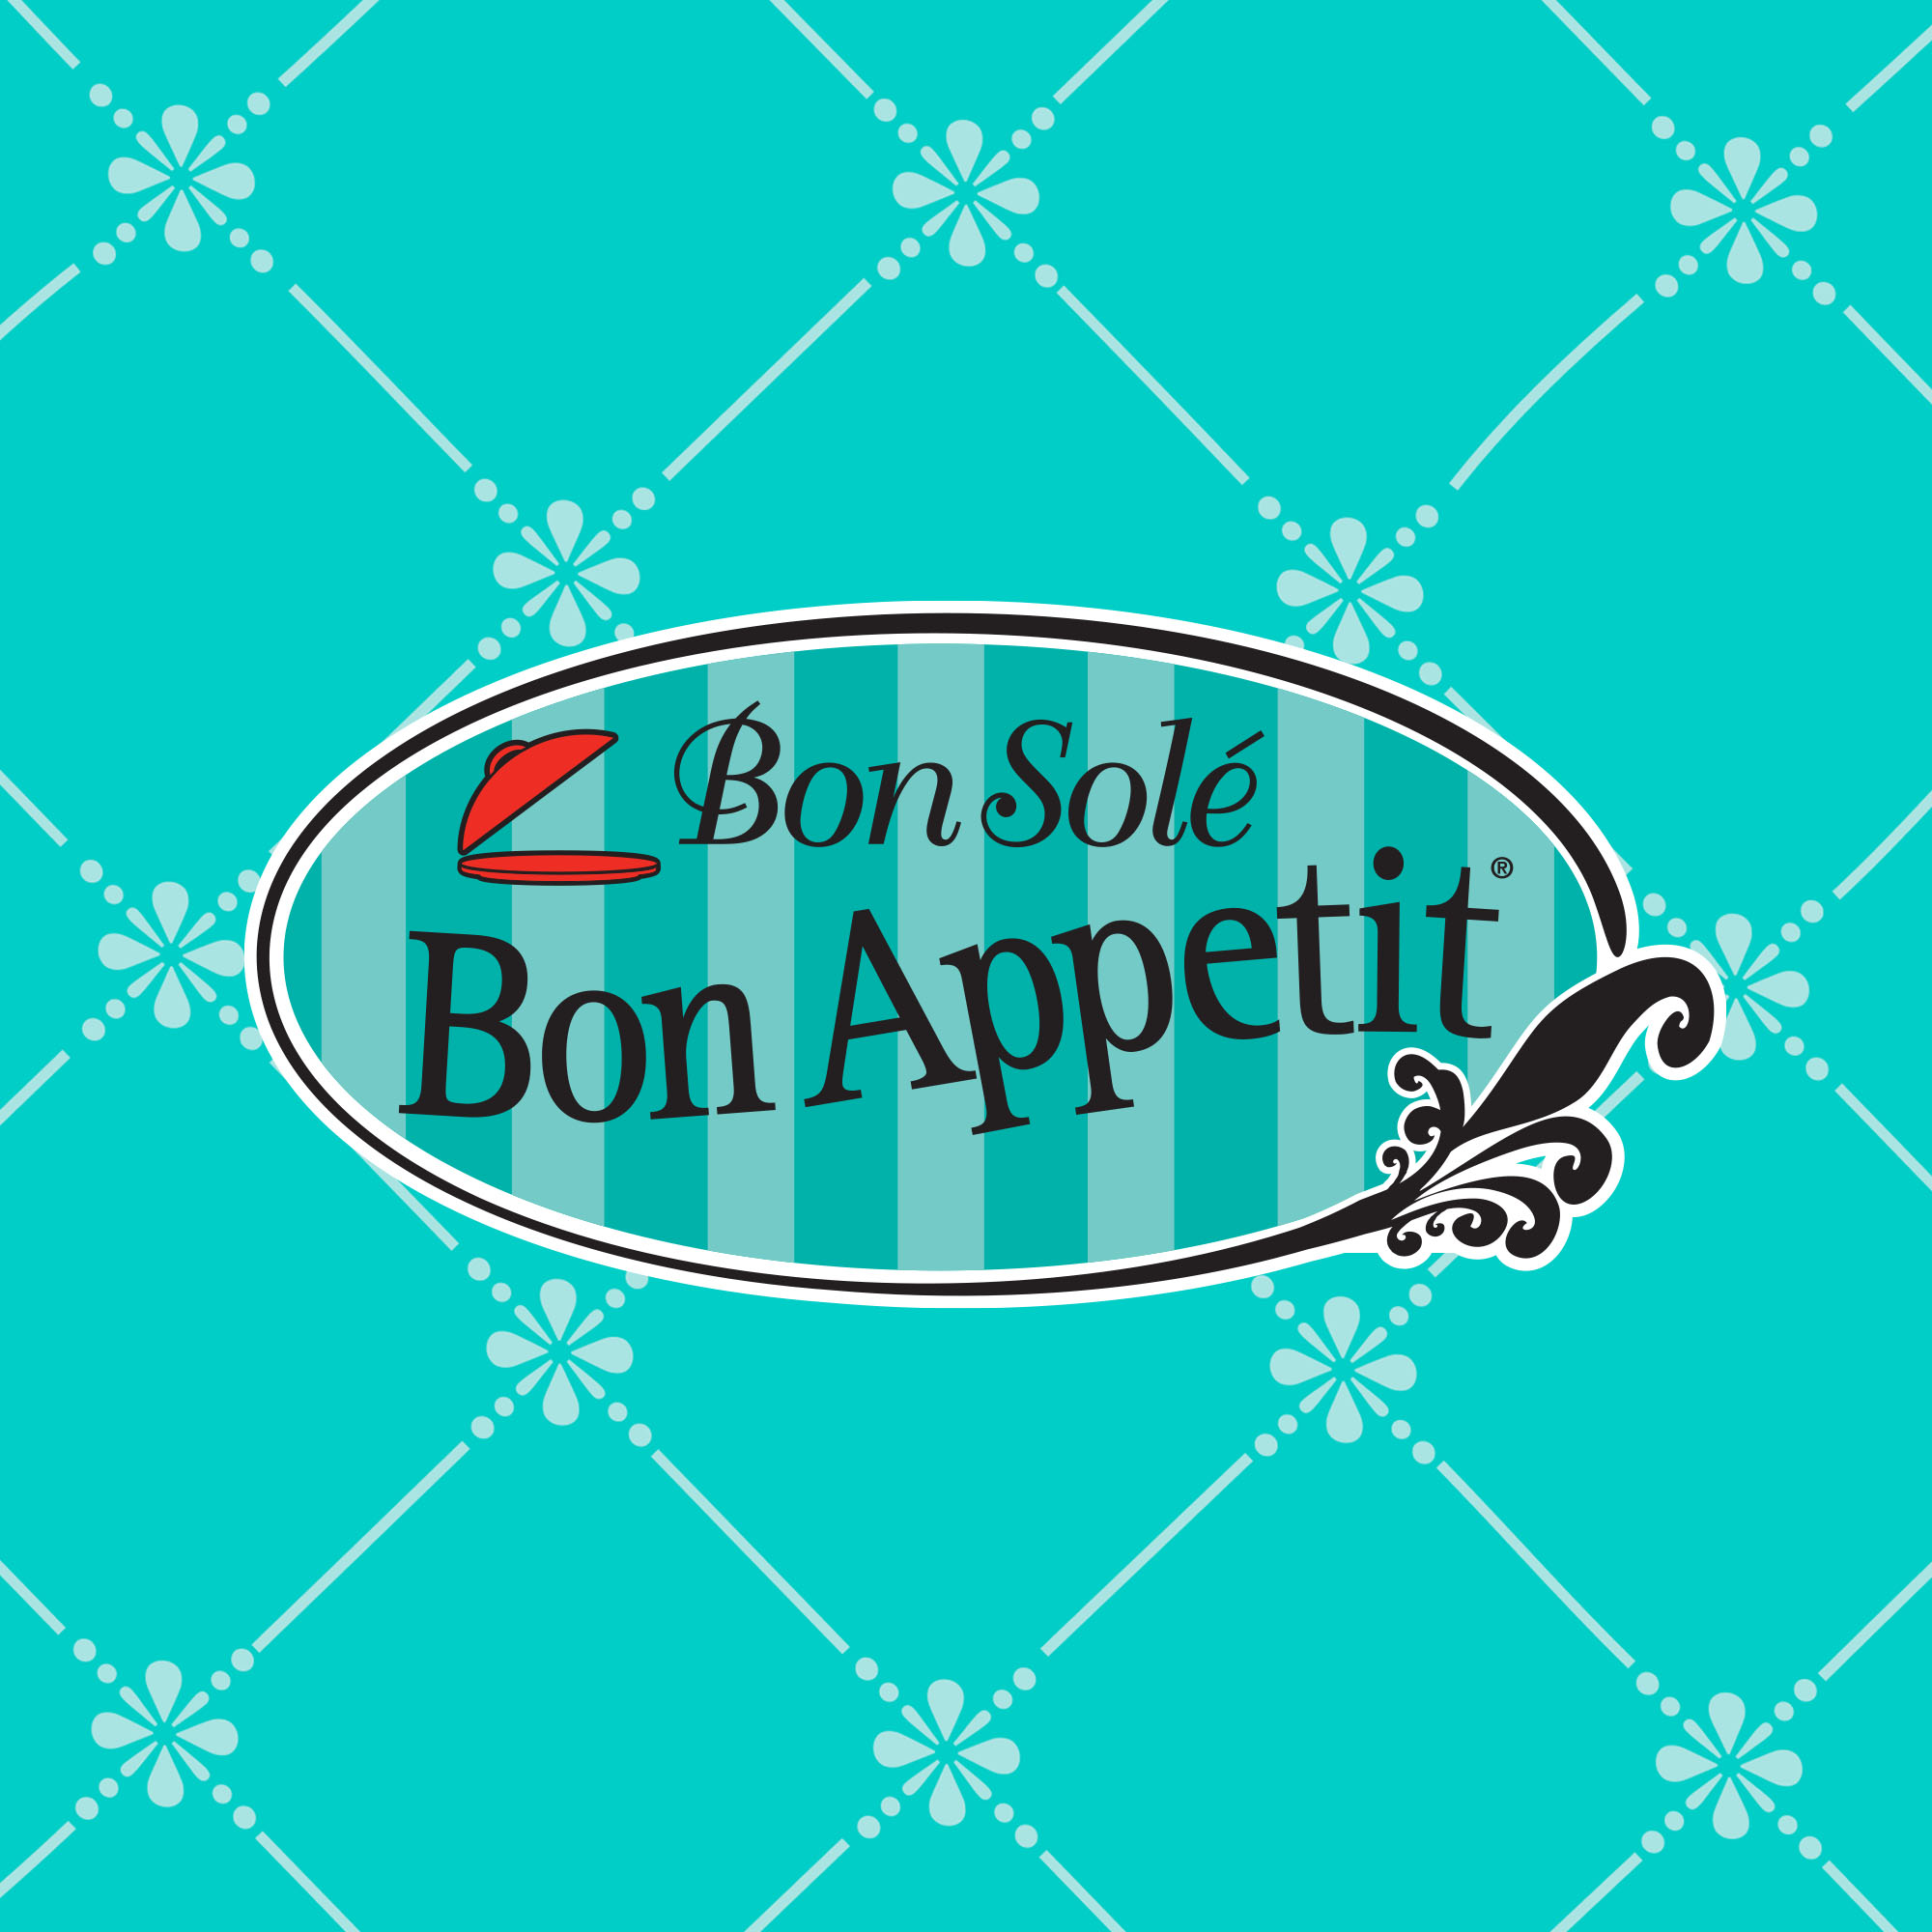 Bon Appétit Bon Sole